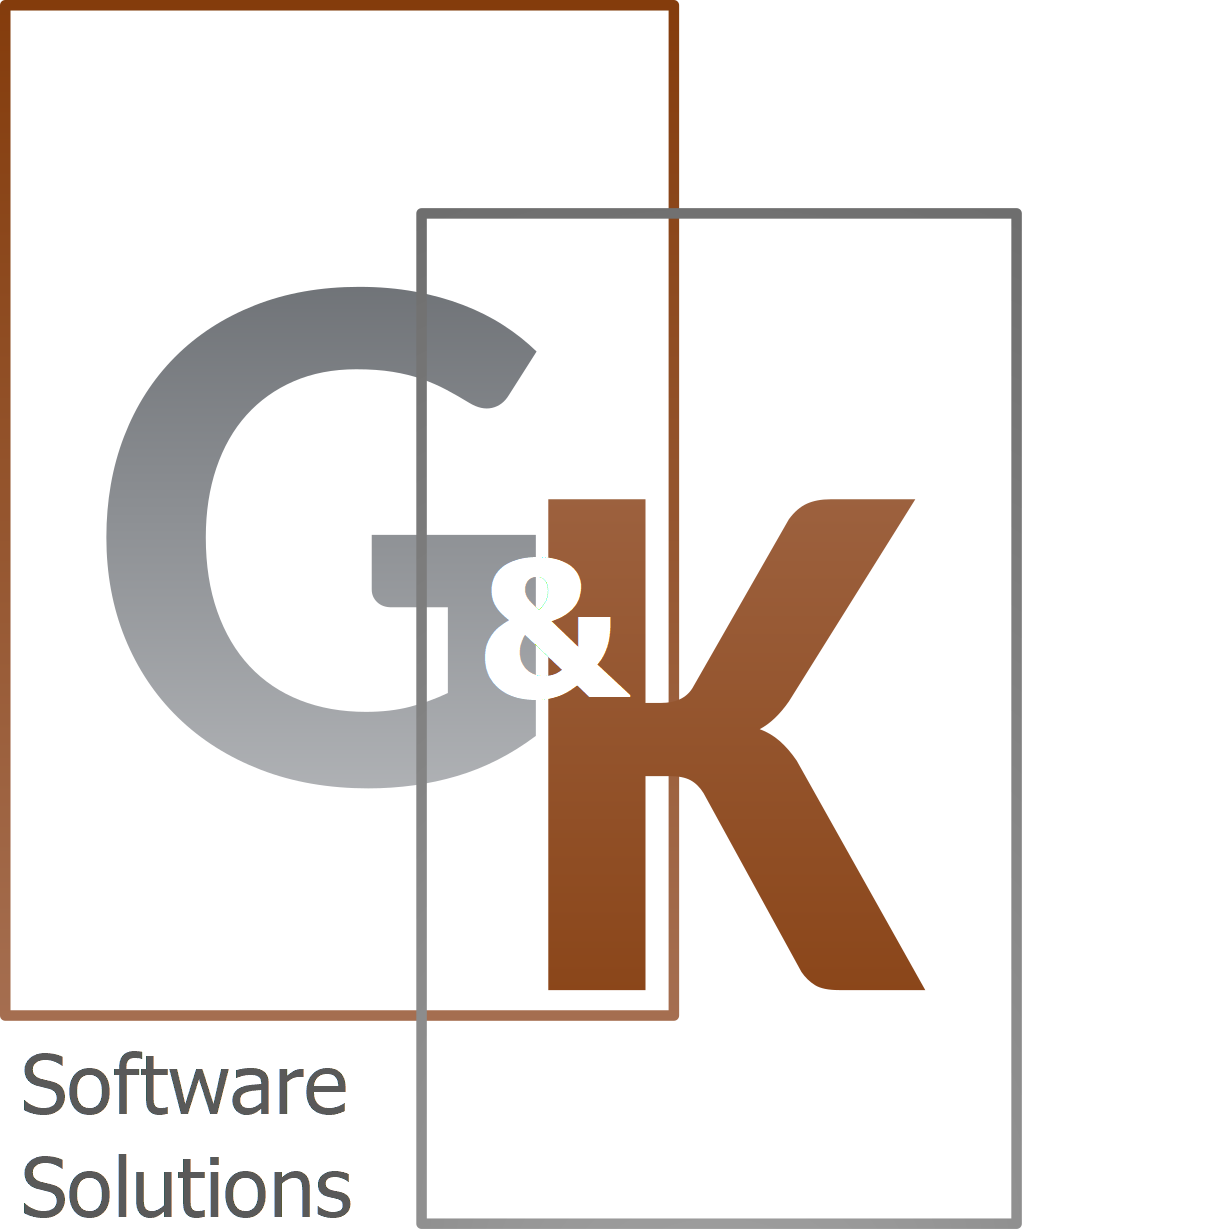 G&K Software Solutions UG (haftungsbeschränkt)